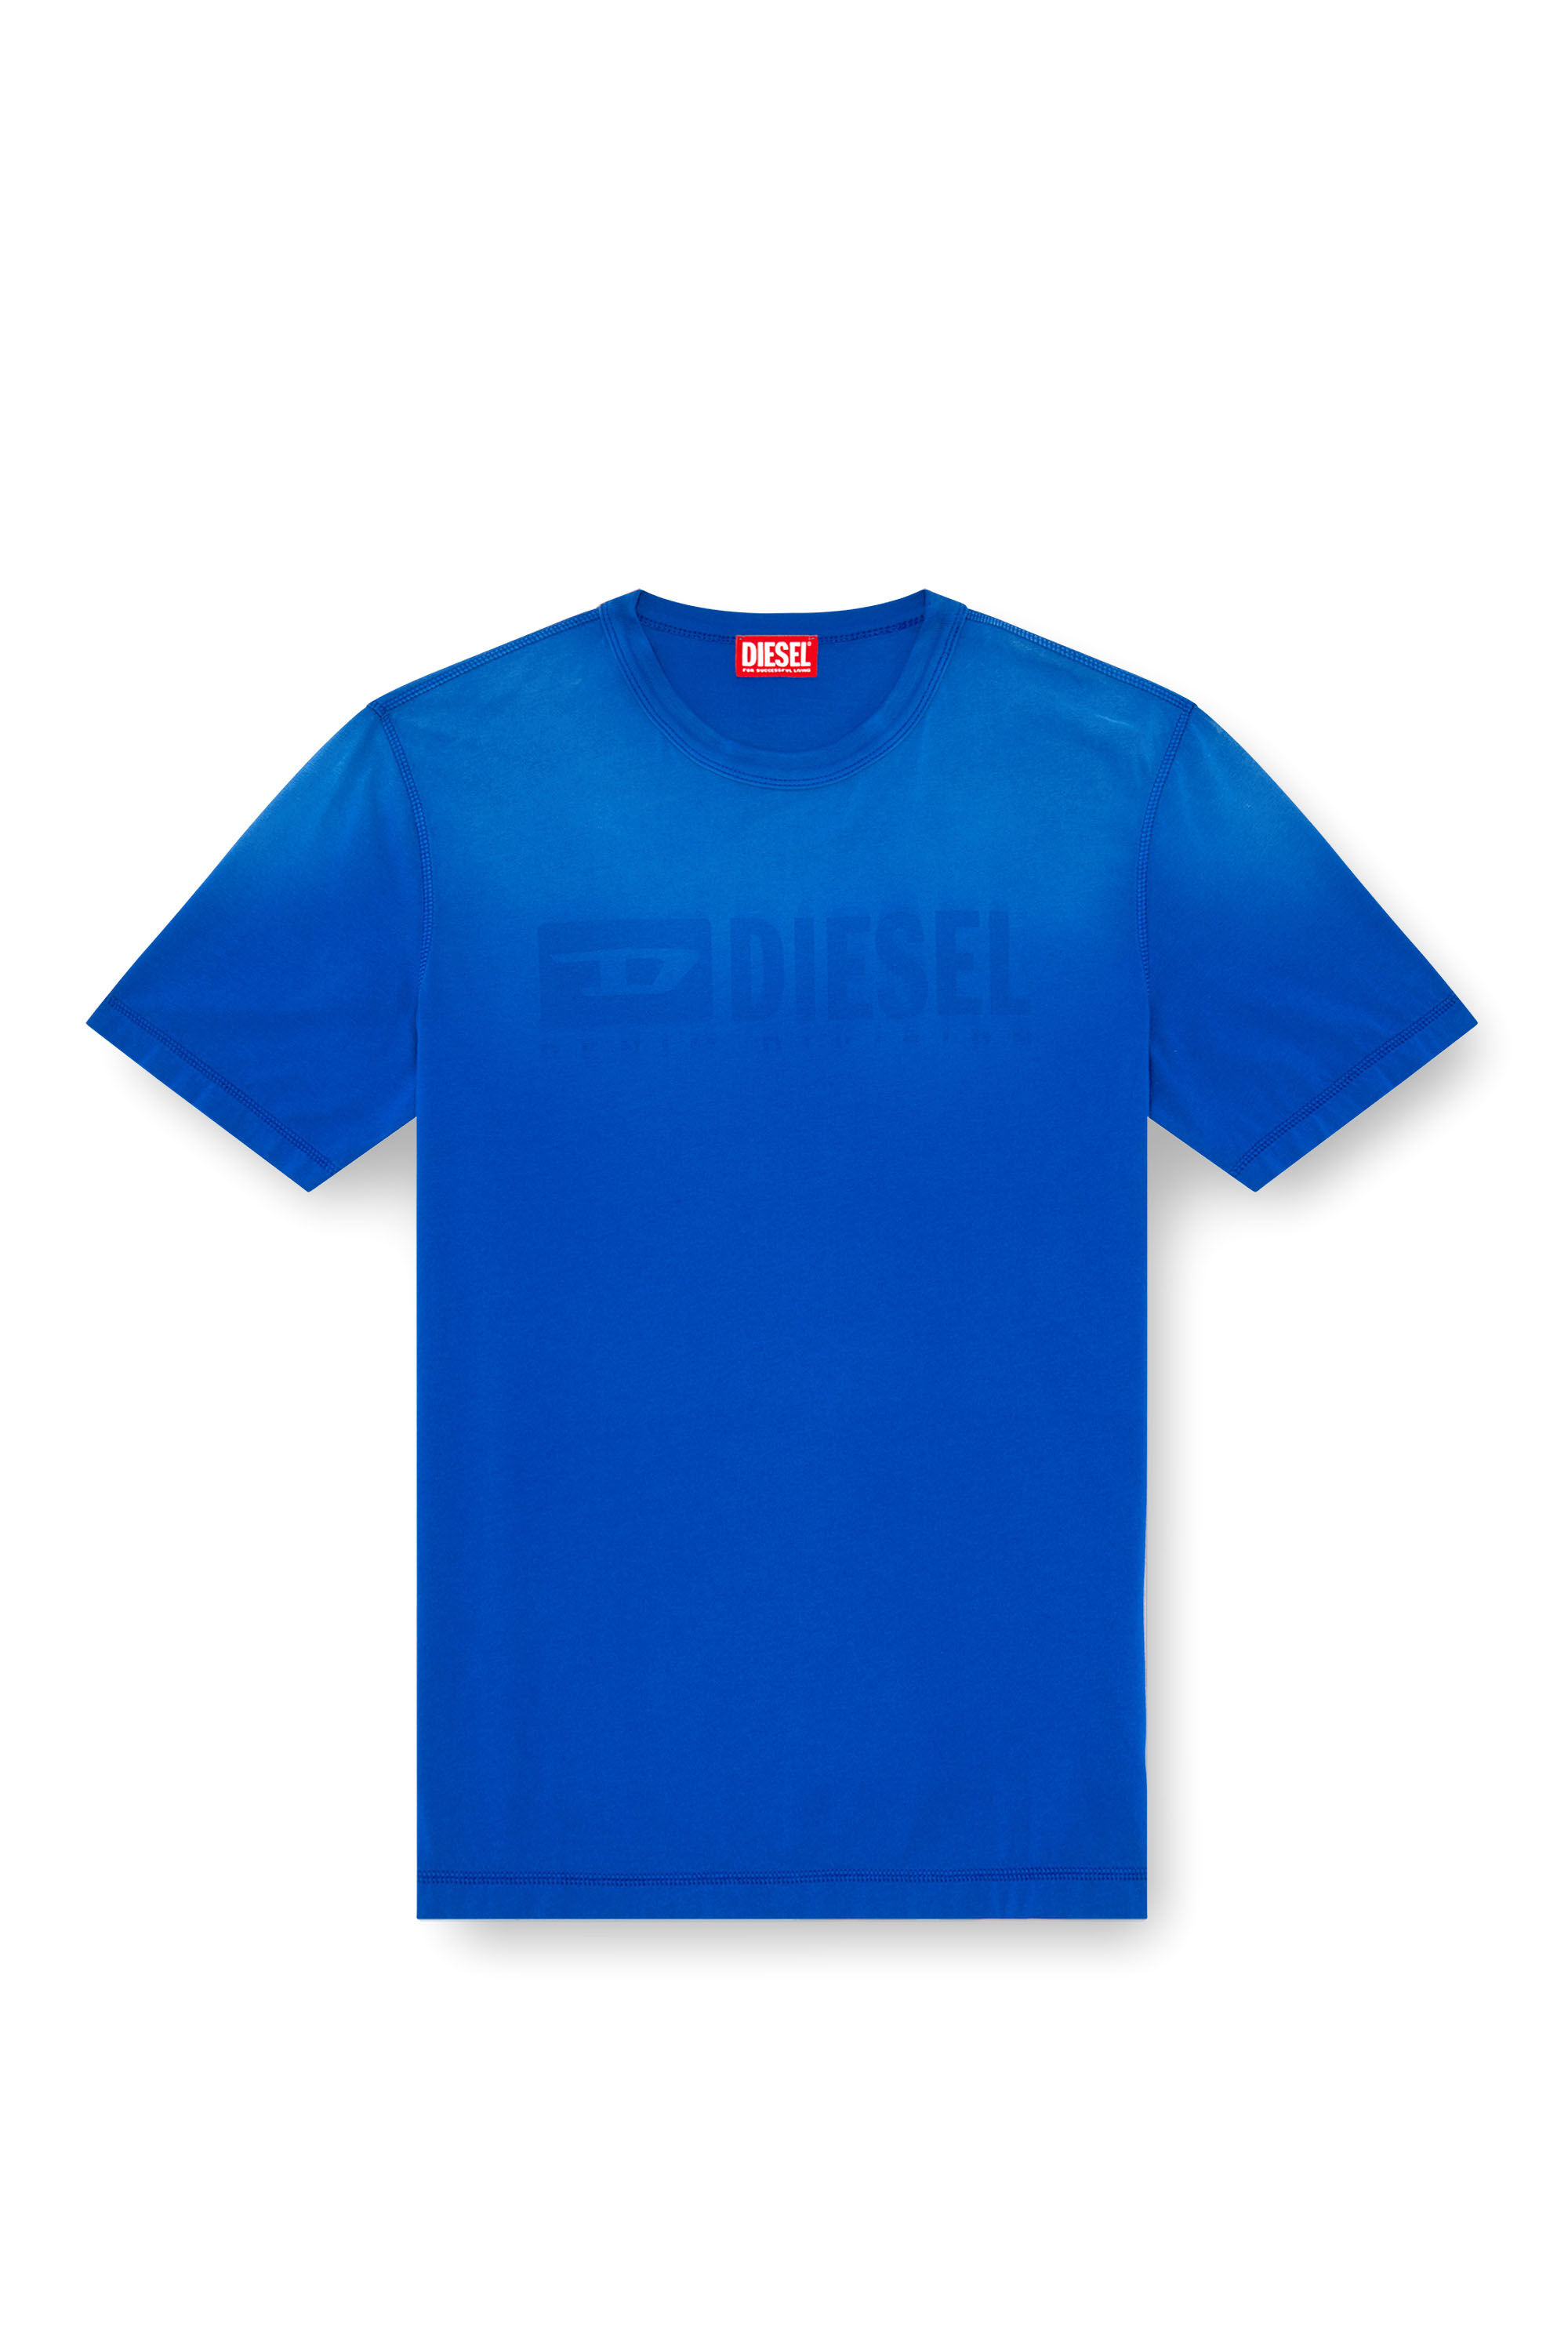 Diesel - T-ADJUST-K4, Hombre Camiseta con tratamiento desteñido por el sol in Azul marino - Image 2